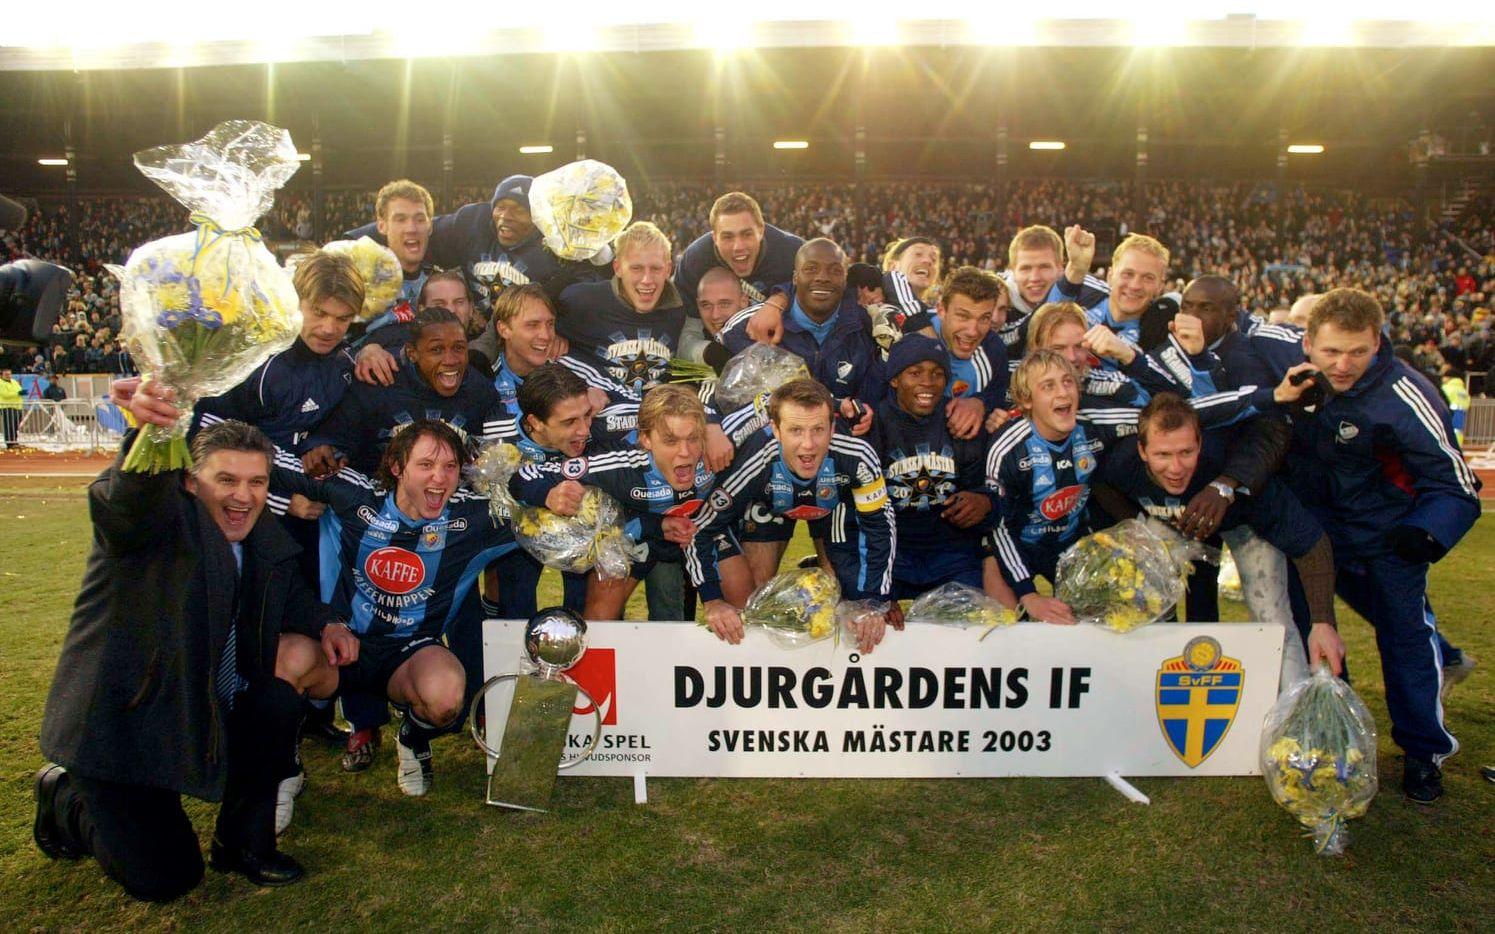 2003: Djurgårdens IF, 12 poäng. Gick fram som en ångvält i inledningen. Hade nio poäng och 11-0 i målskillnad efter tre matcher. Förlorade sedan mot Örebro innan laget på nytt kom in i vinnarspåret med en 3-1-seger hemma mot IFK Göteborg.